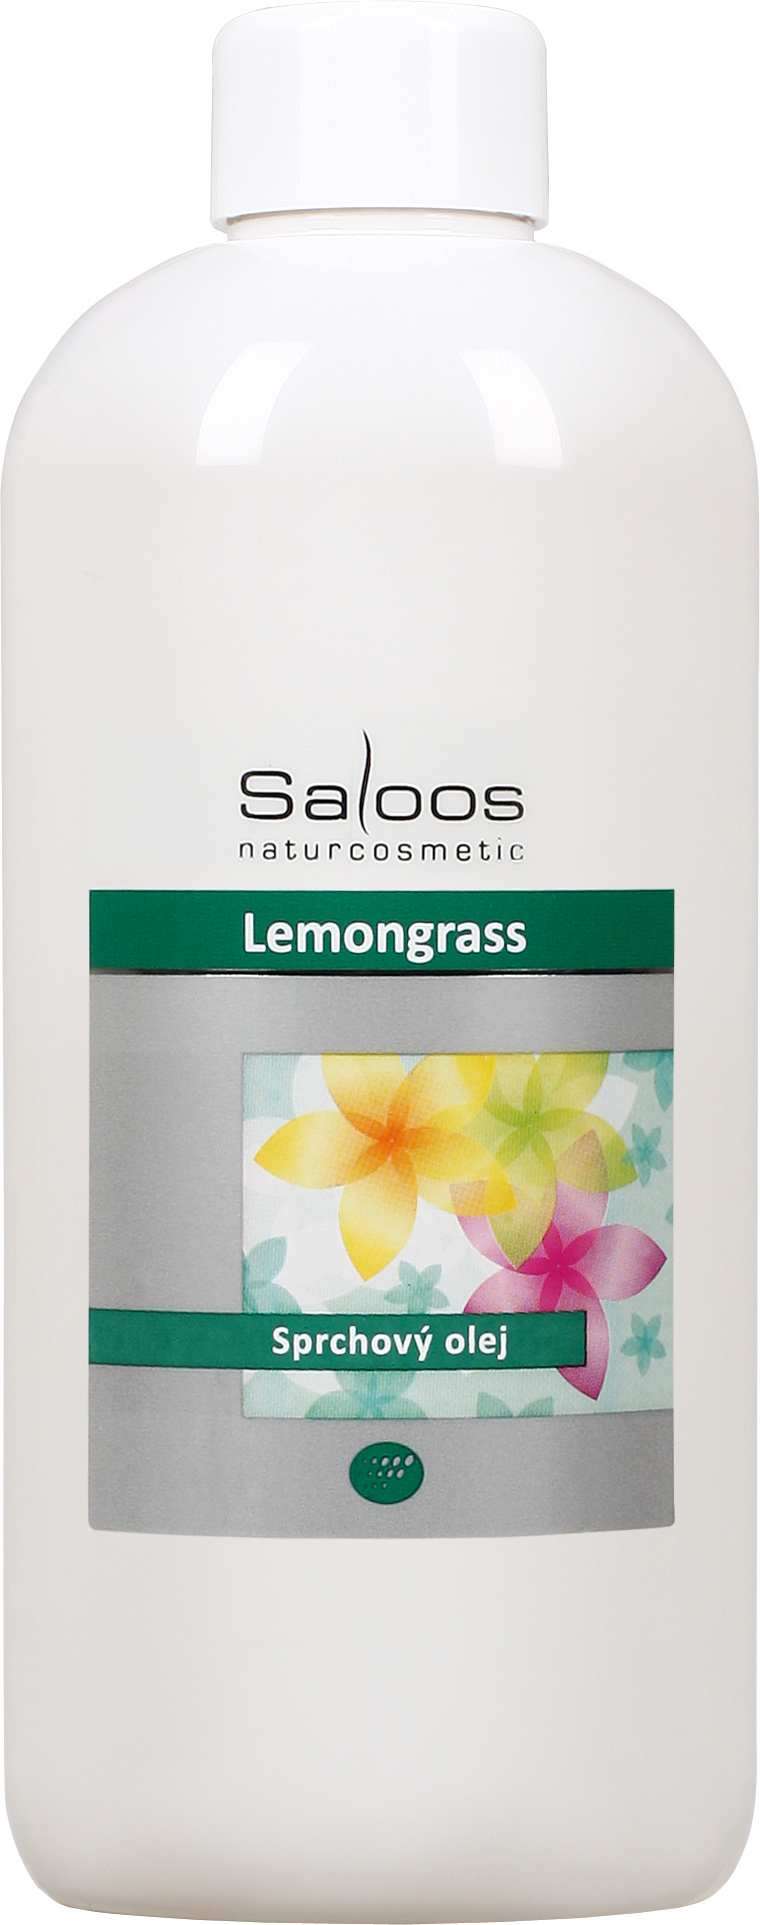 Saloos Lemongrass - sprchový olej Balení: 500 ml